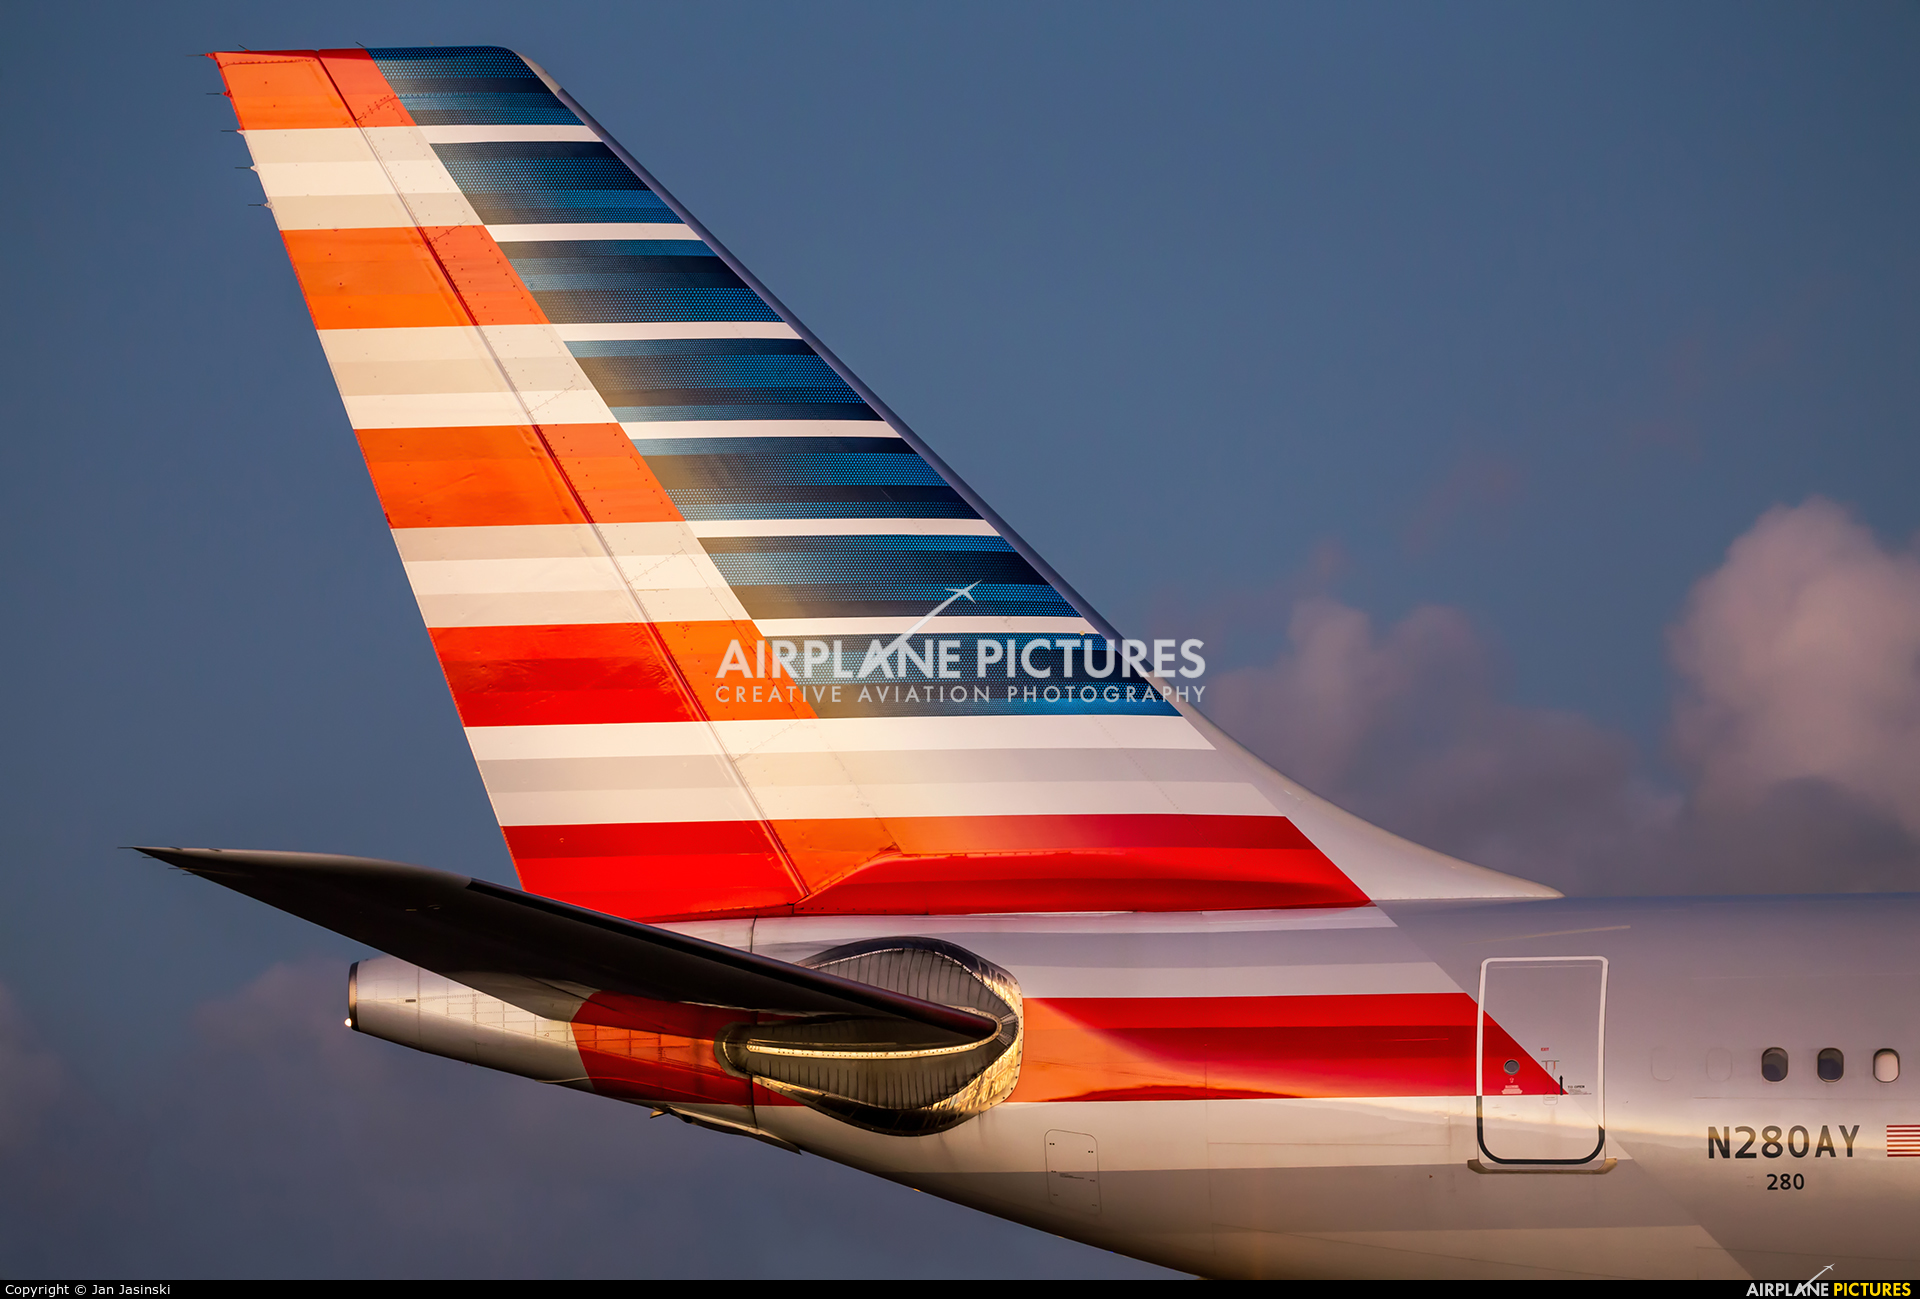 American Airlines N280AY aircraft at Sint Maarten - Princess Juliana Intl